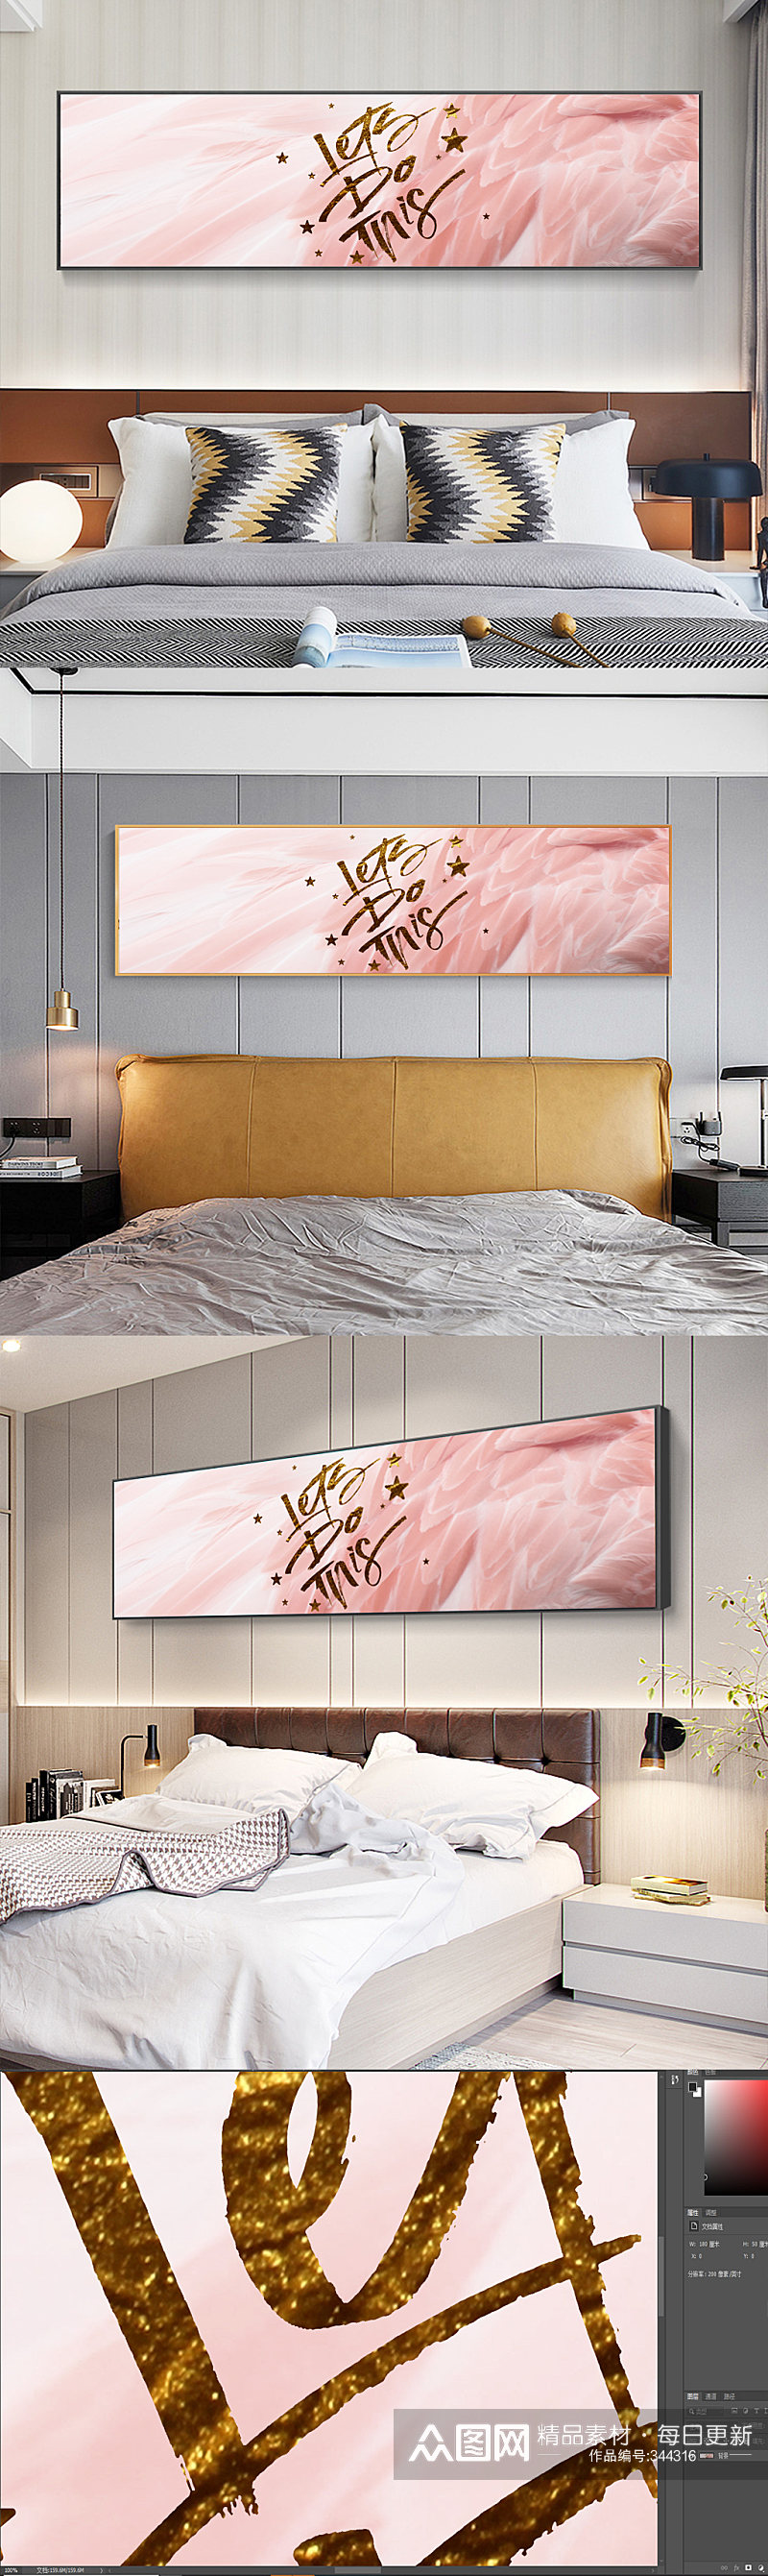 粉色抽象羽毛床头装饰画素材